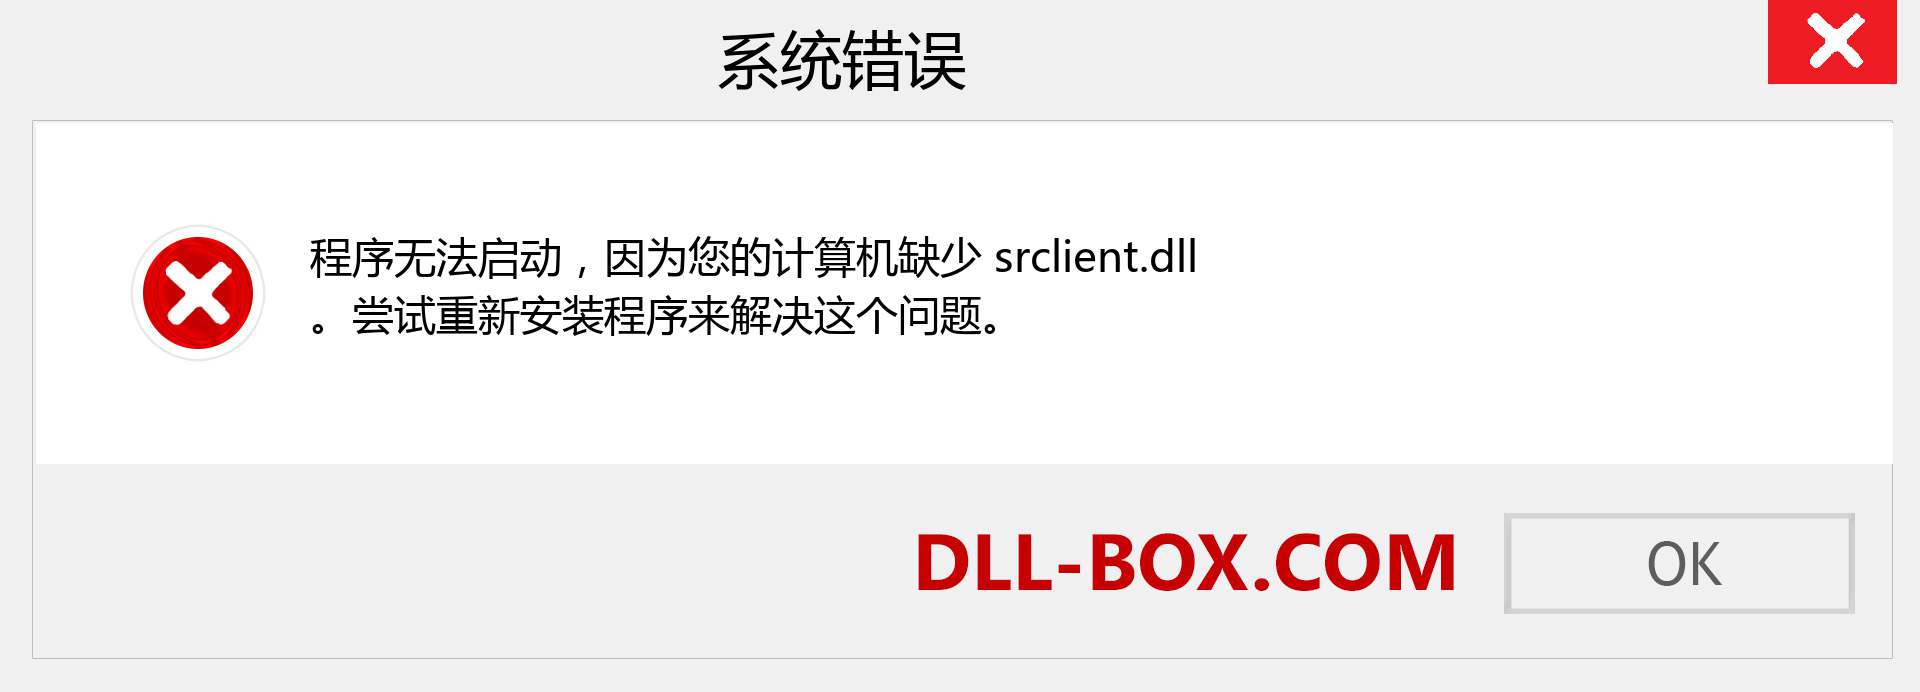 srclient.dll 文件丢失？。 适用于 Windows 7、8、10 的下载 - 修复 Windows、照片、图像上的 srclient dll 丢失错误